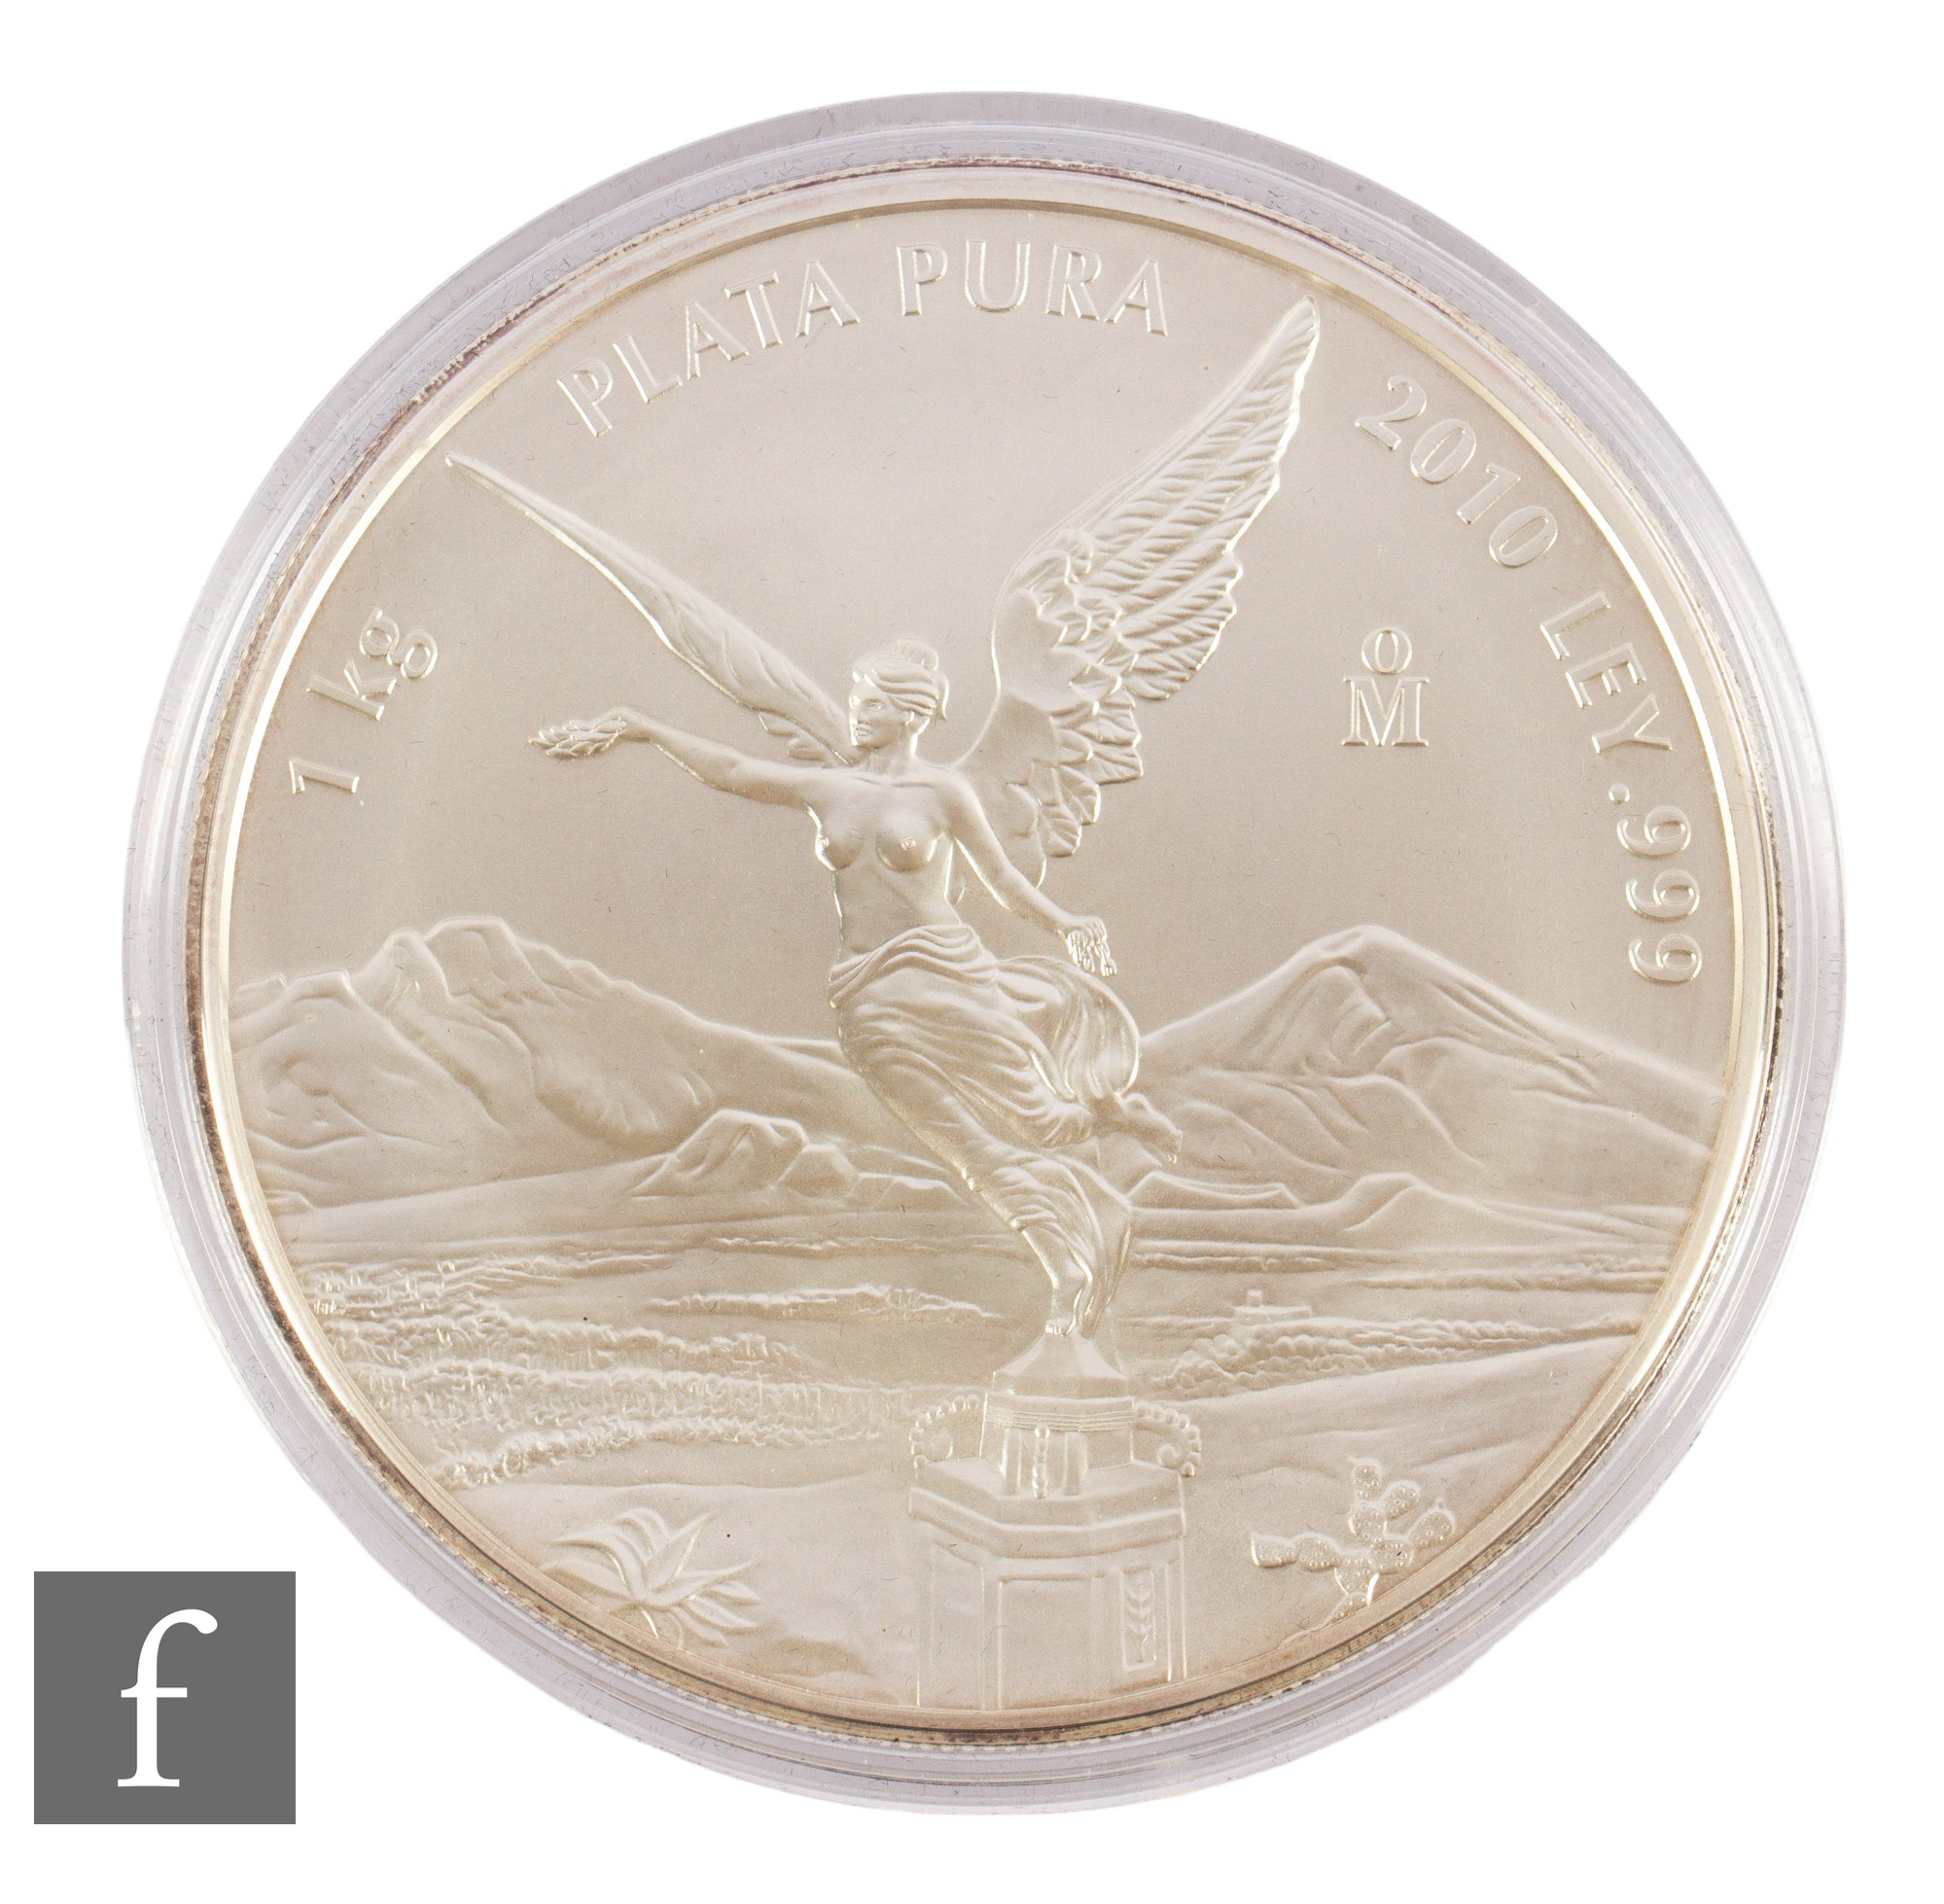 Mexico - A 2010 Mexico Libertad 1kg .999 silver coin, reverse Estados Unidos Mexicanos.